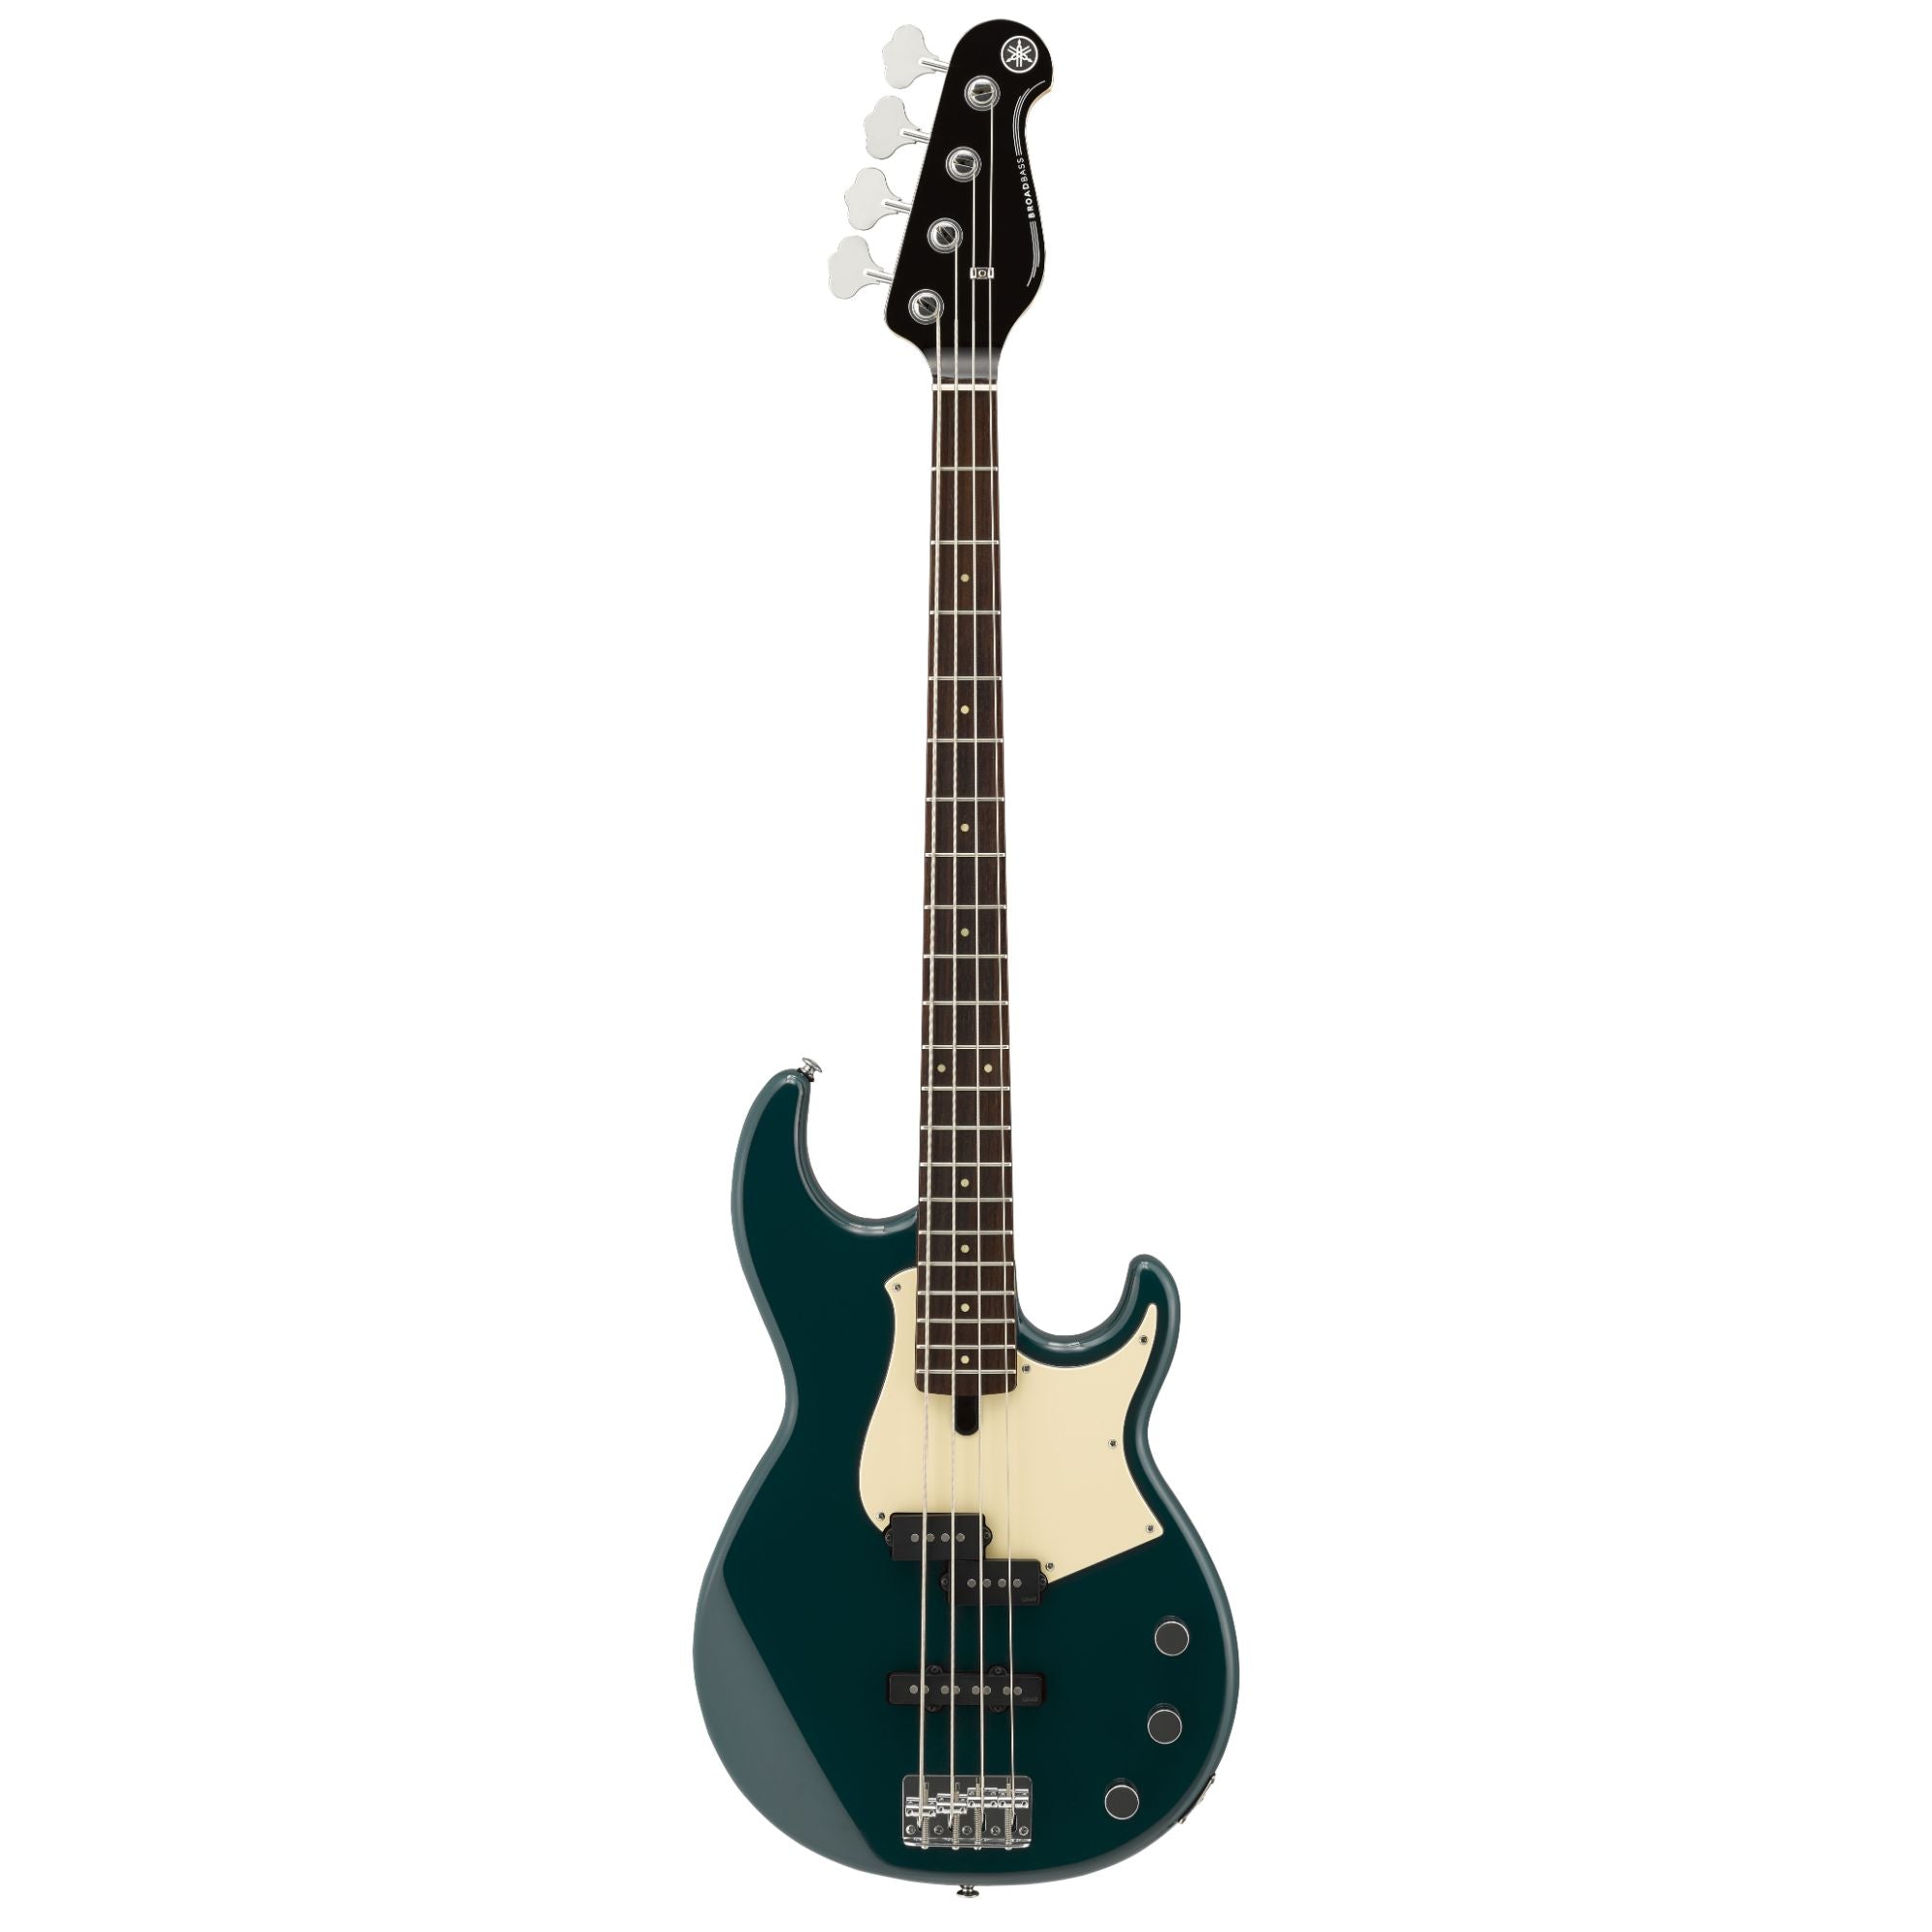 Yamaha BB434TB Bass Guitar, Teal Blue